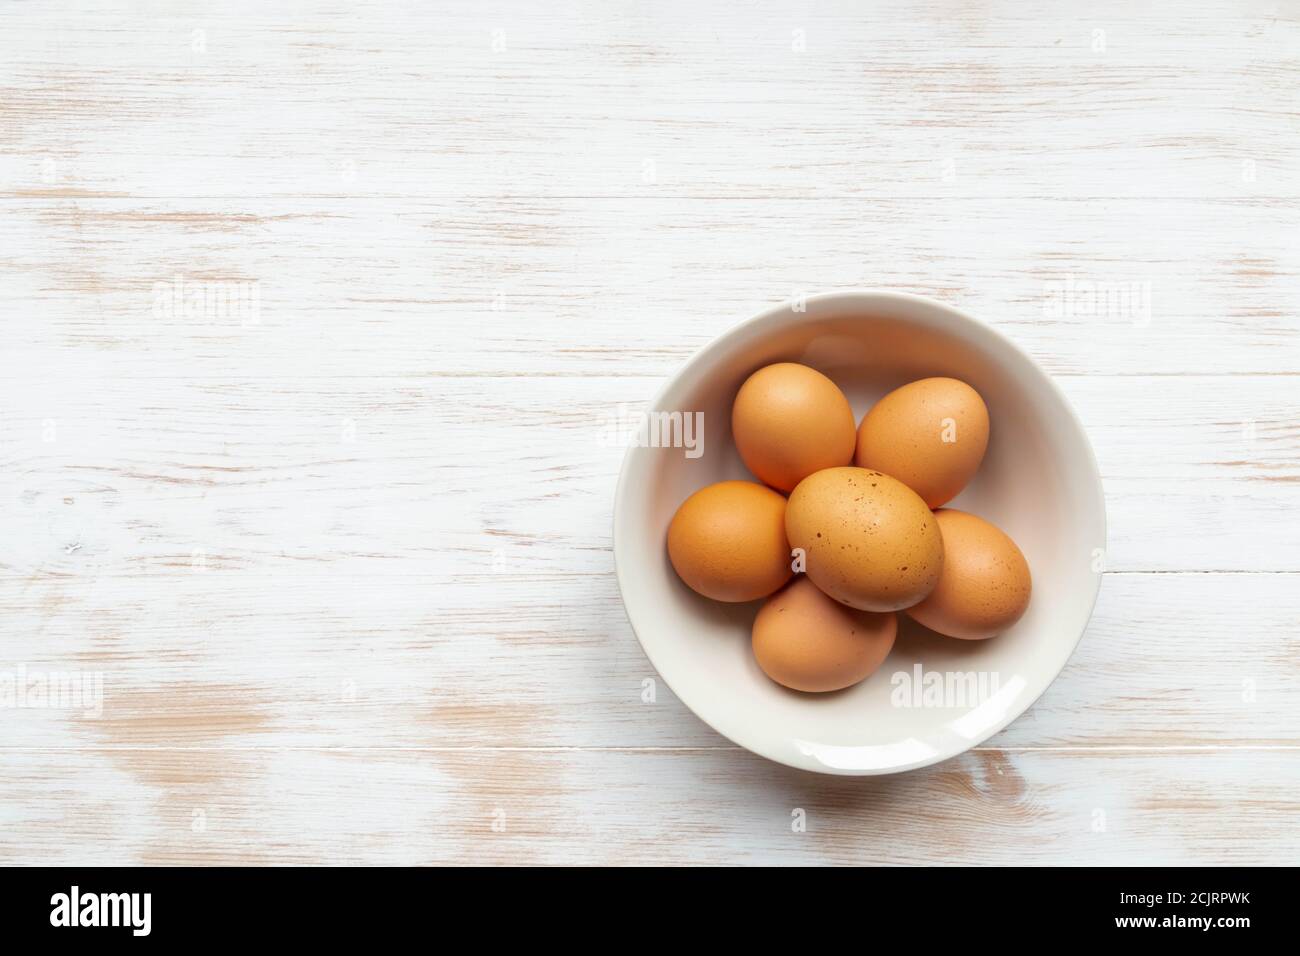 Vista dall'alto delle uova biologiche gratuite nel recipiente. Piatto con uova di pollo marroni su tavola di legno piatto. Far rosolare le uova nel recipiente sullo sfondo del legno Foto Stock